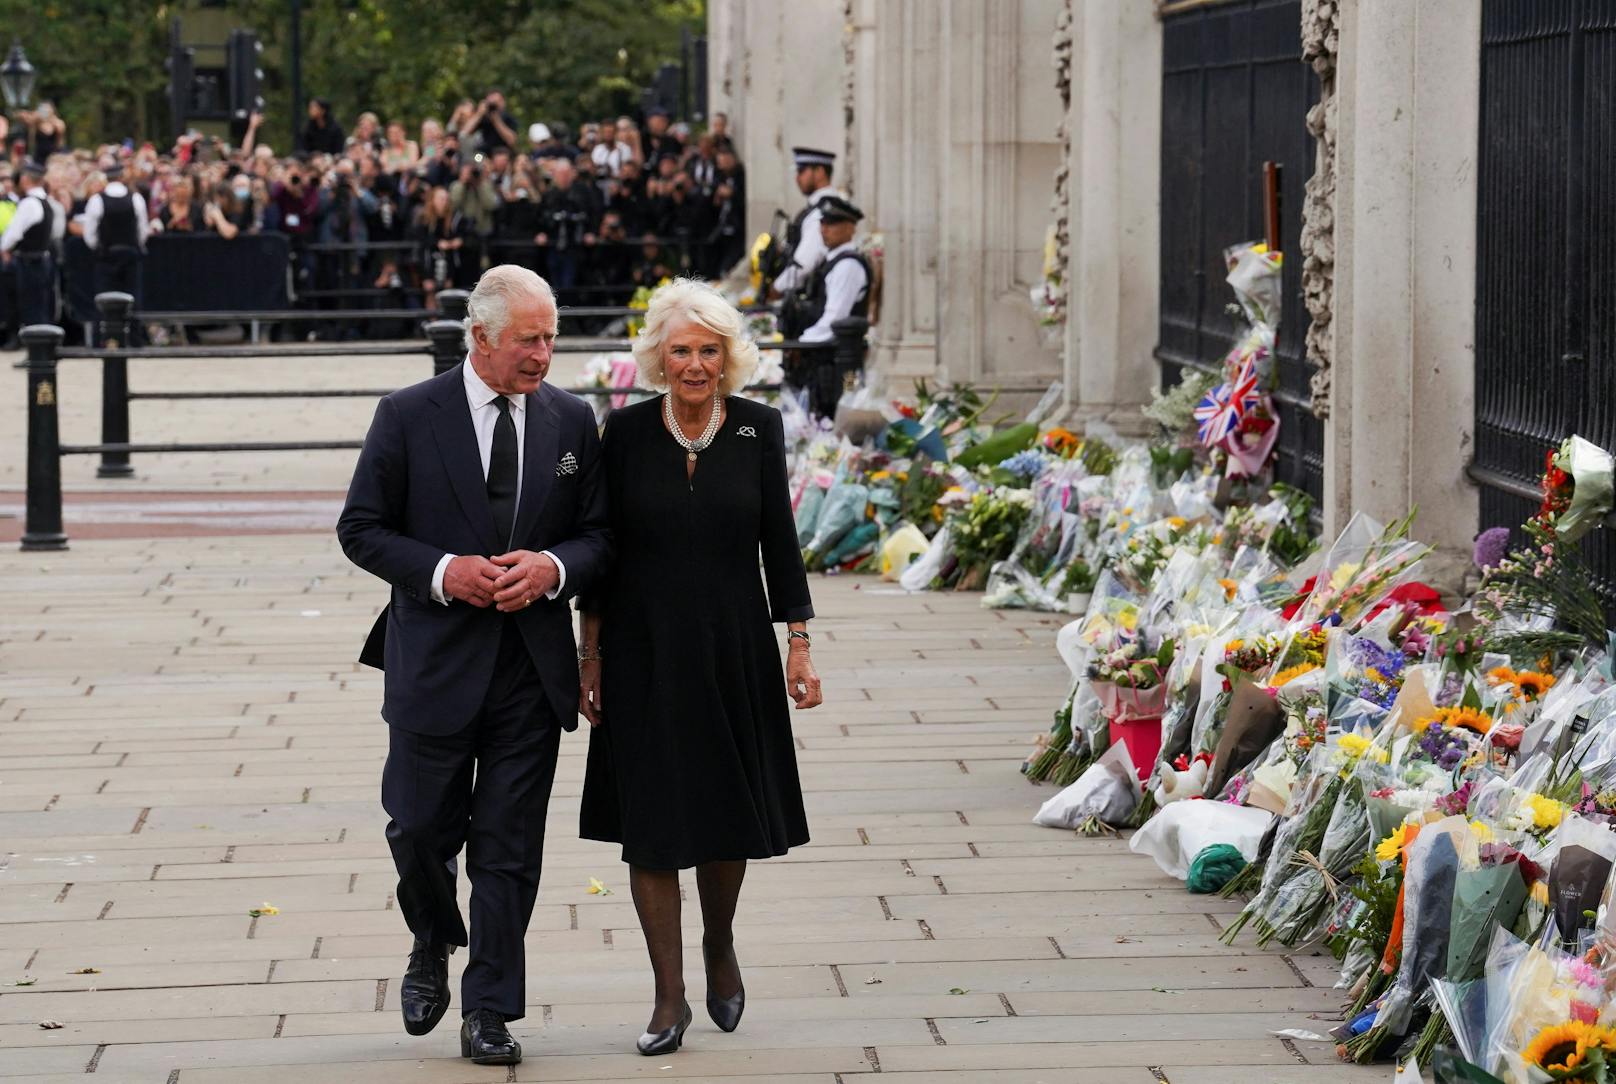 König Charles und Camilla schreiten gemeinsam den Zaun des Buckingham-Palastes entlang, wo unzählige Blumensträuße niedergelegt wurden.